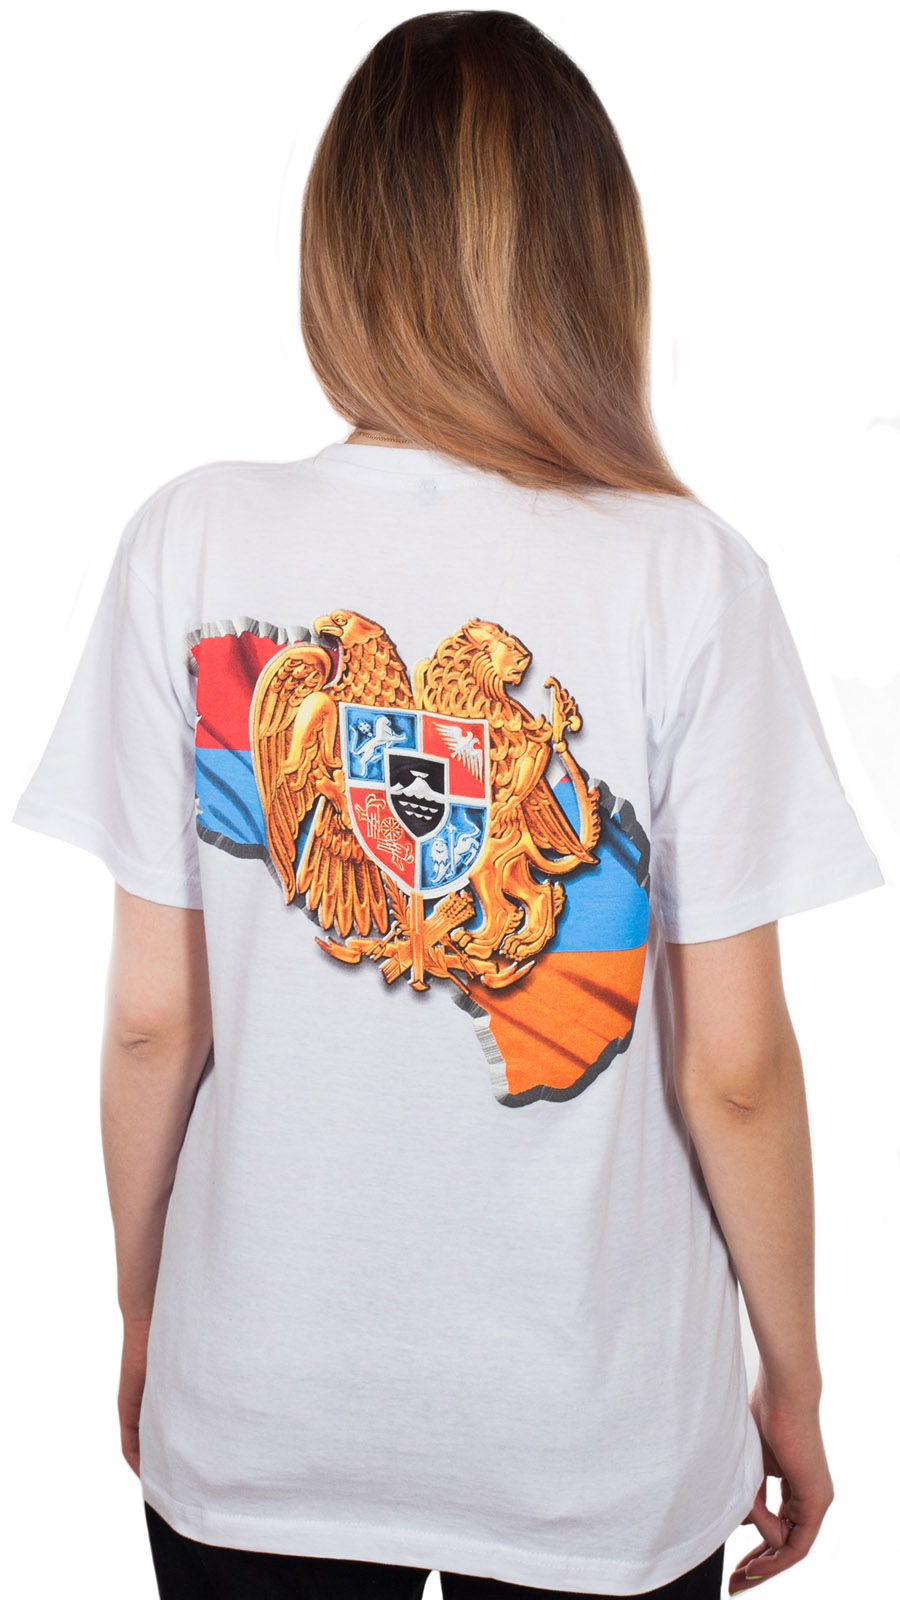 Купить подарок на 23 февраля – в наличии оригинальные футболки по цене 100 рублей!